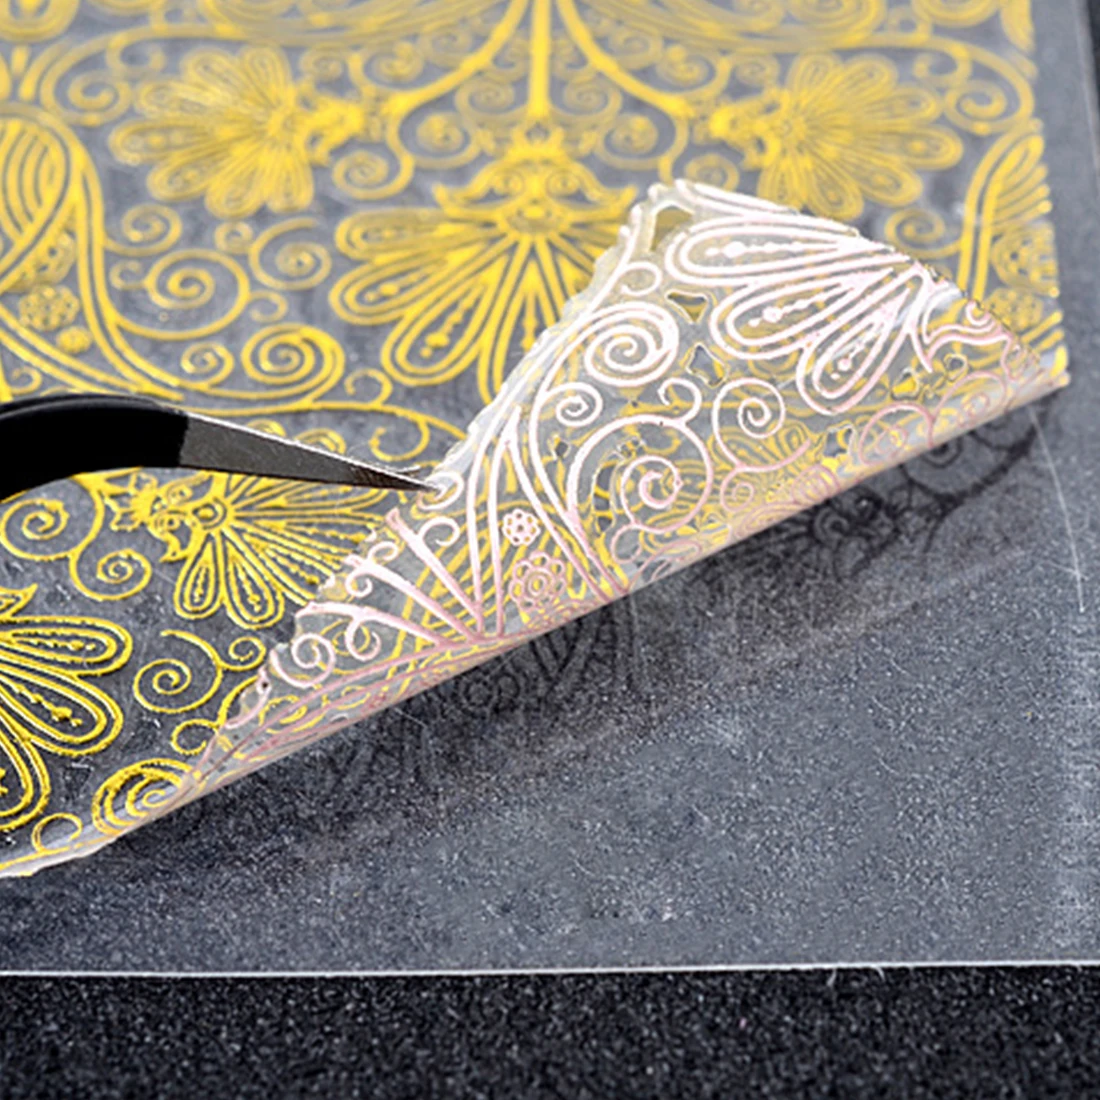 Наклейки для ногтей 4 цвета цветущие цветы Стикеры 3D на ногти Nail Art Наклейки 8 листов/набор тисненые 3D золотые цветы красота советы